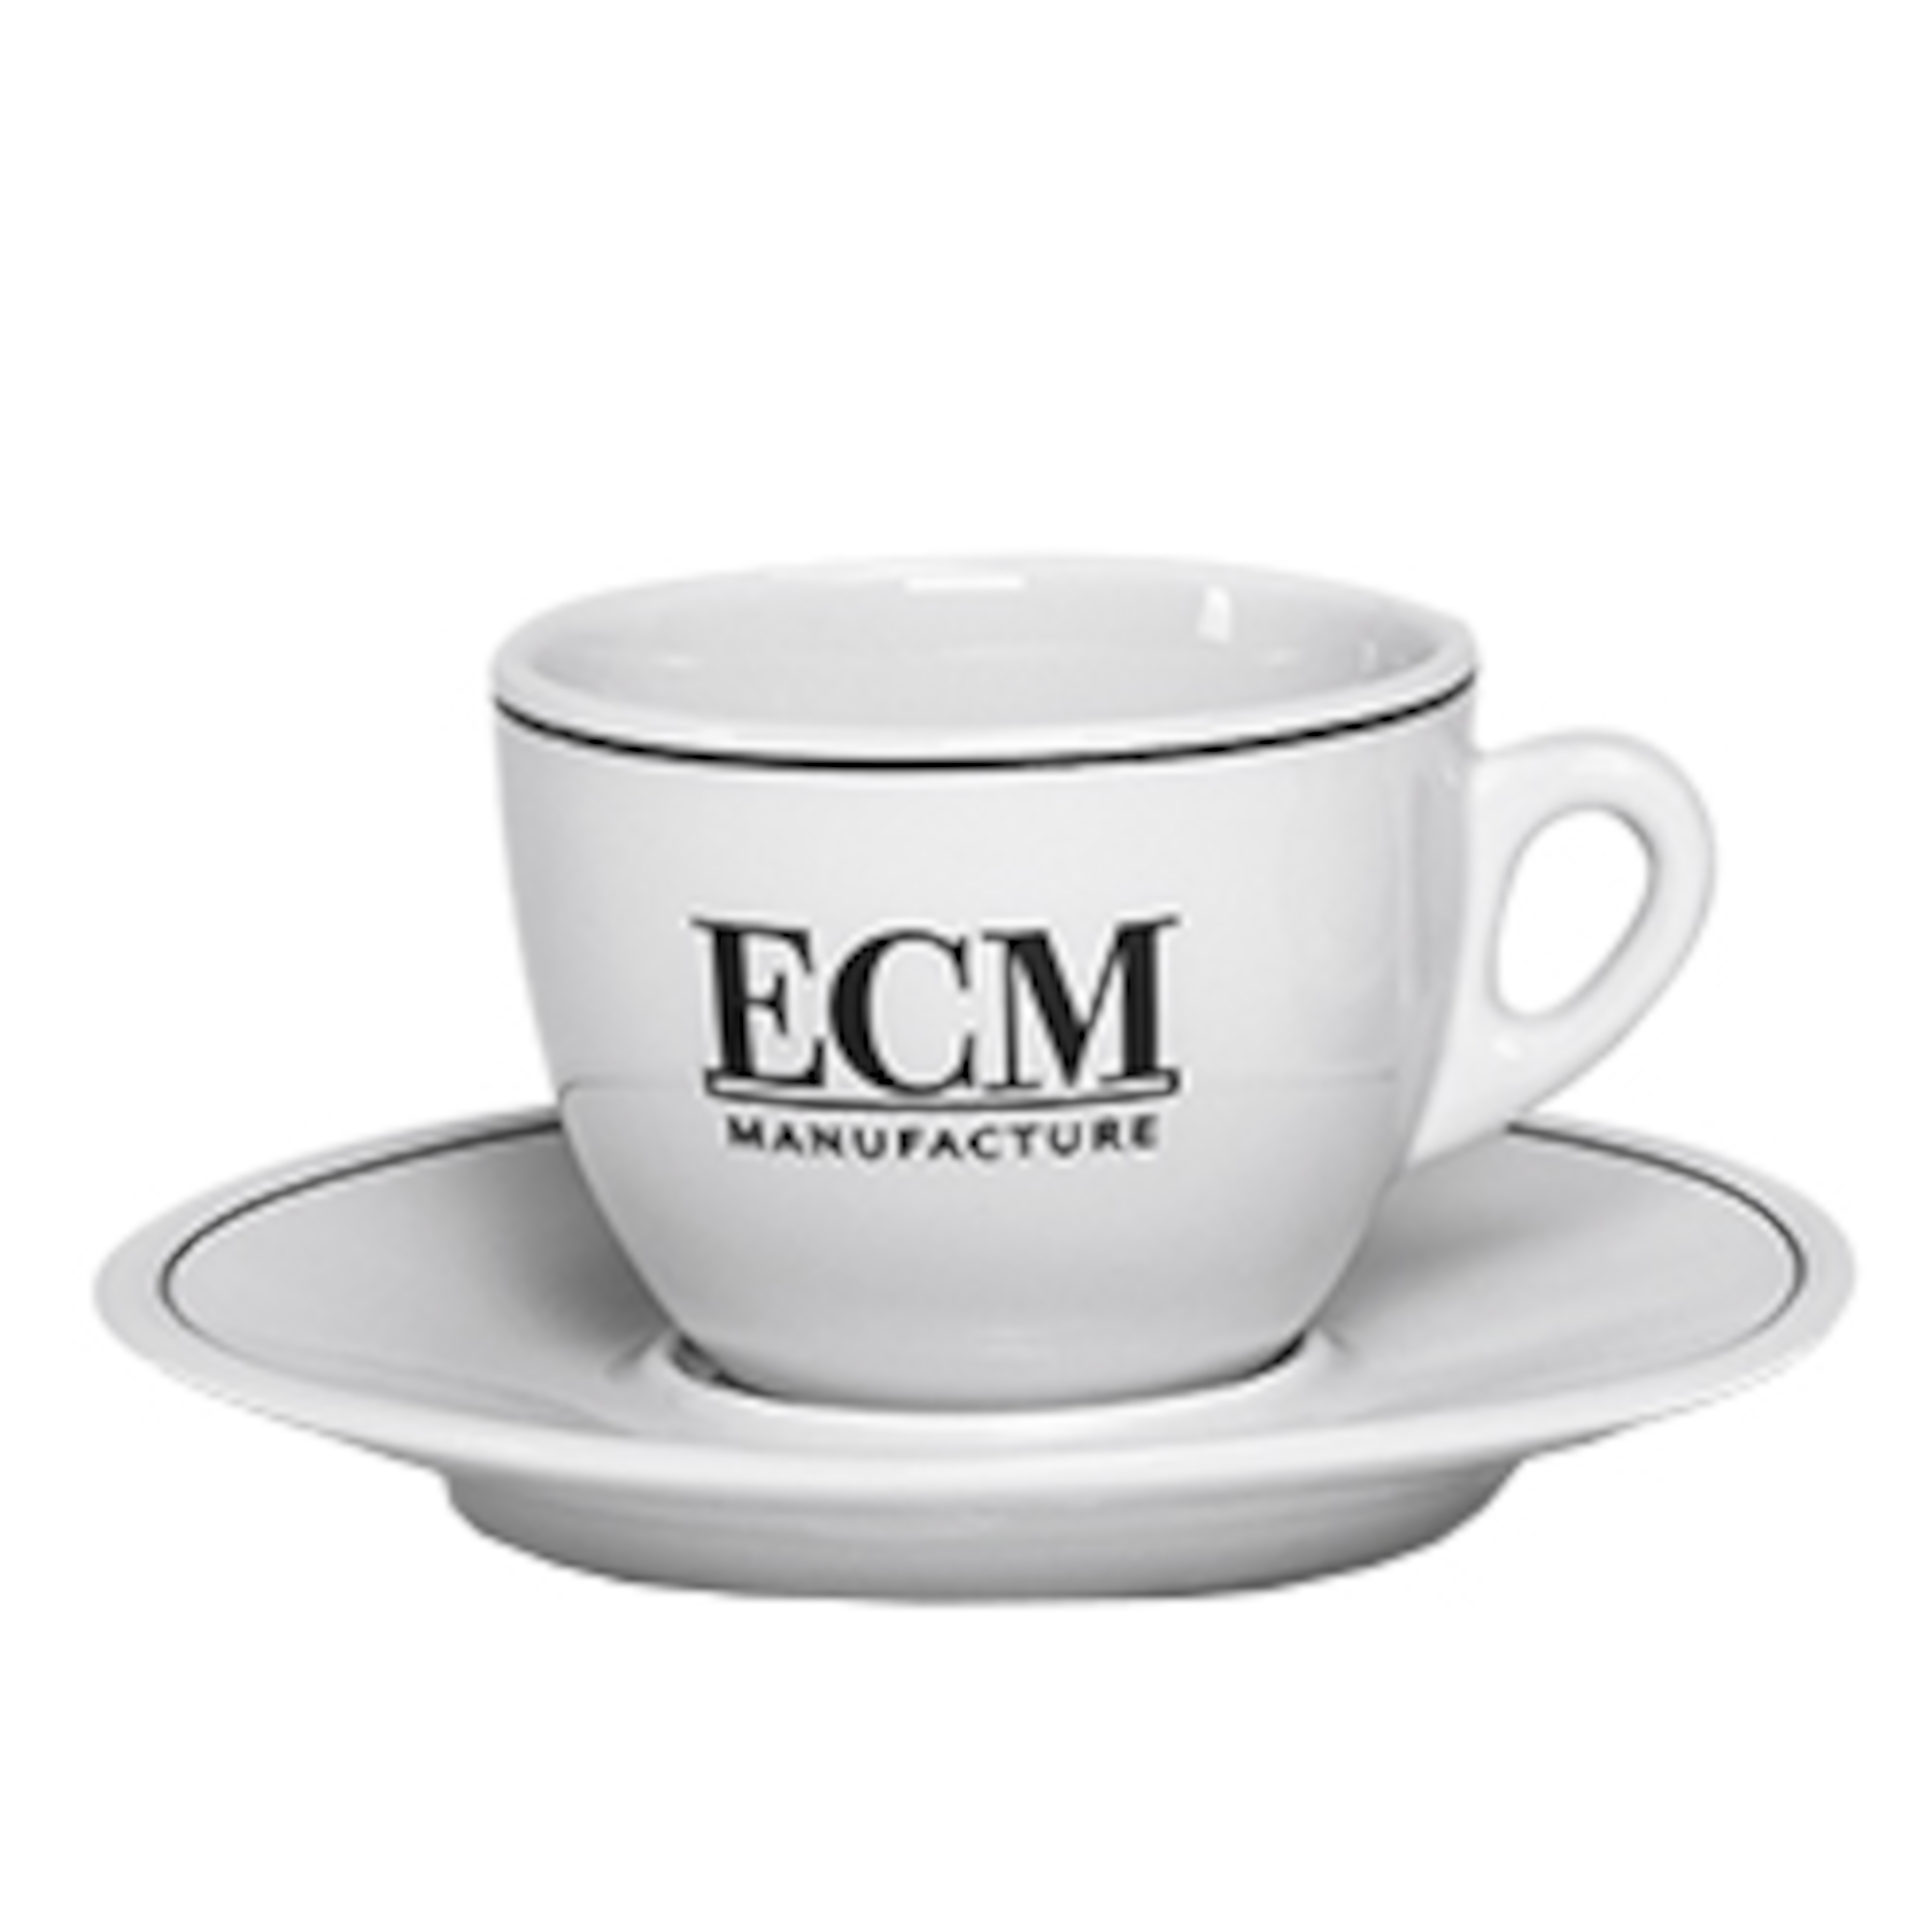 ECM Cappuccinotasse klassischt